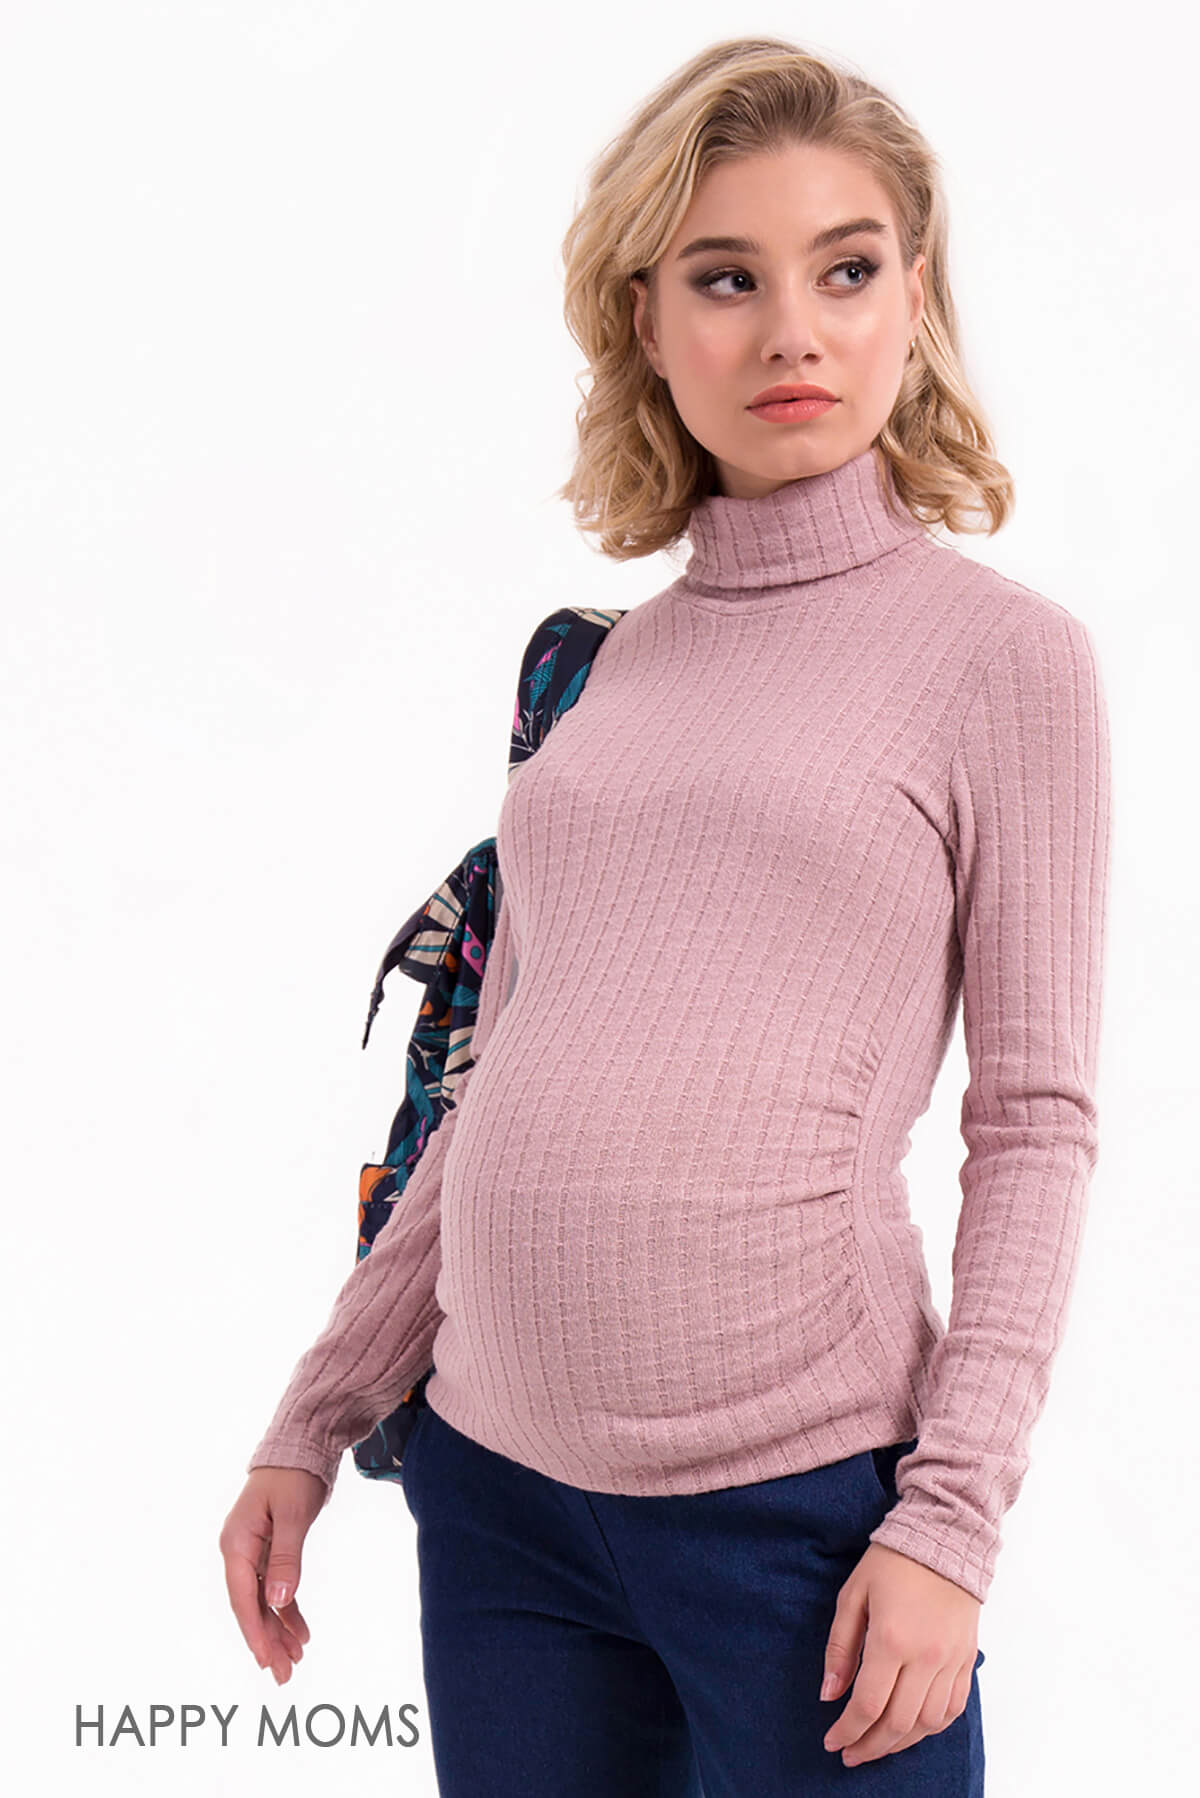 Водолазка для беременных и будущих мам женская повседневная теплая кофта кофточка свитер / Happy Moms